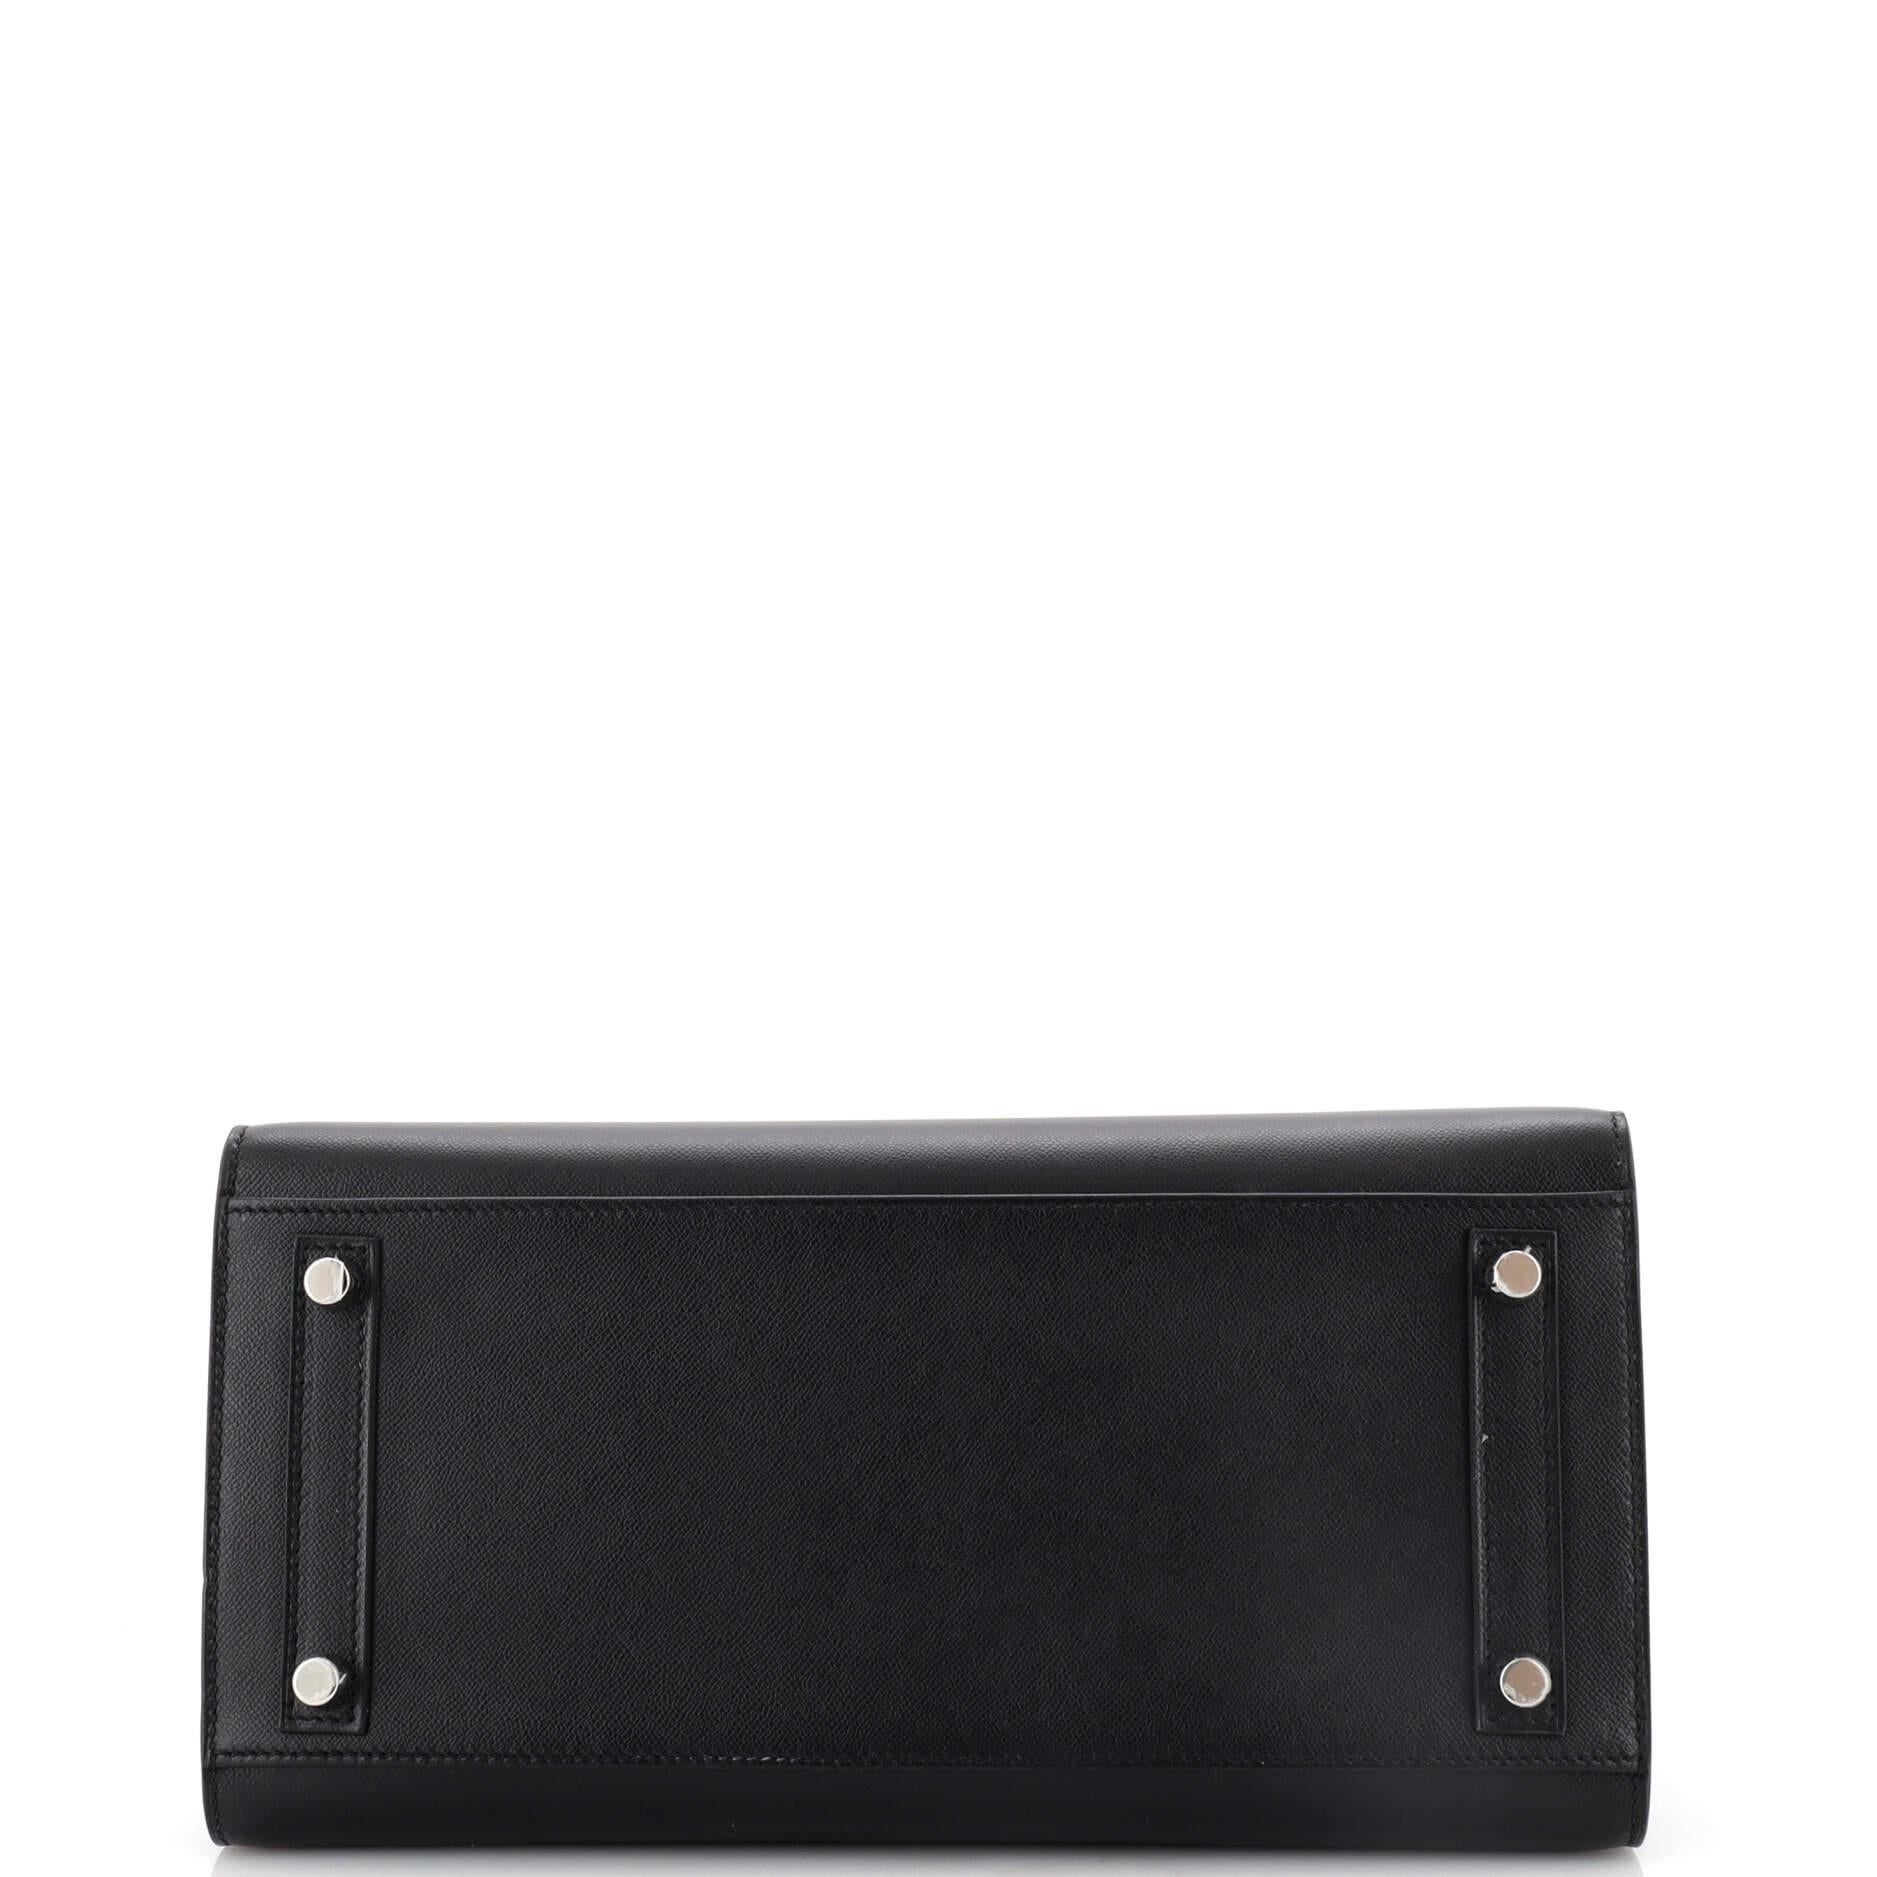 Hermes Birkin Sellier Bag Noir Madame with Palladium Hardware 30 1